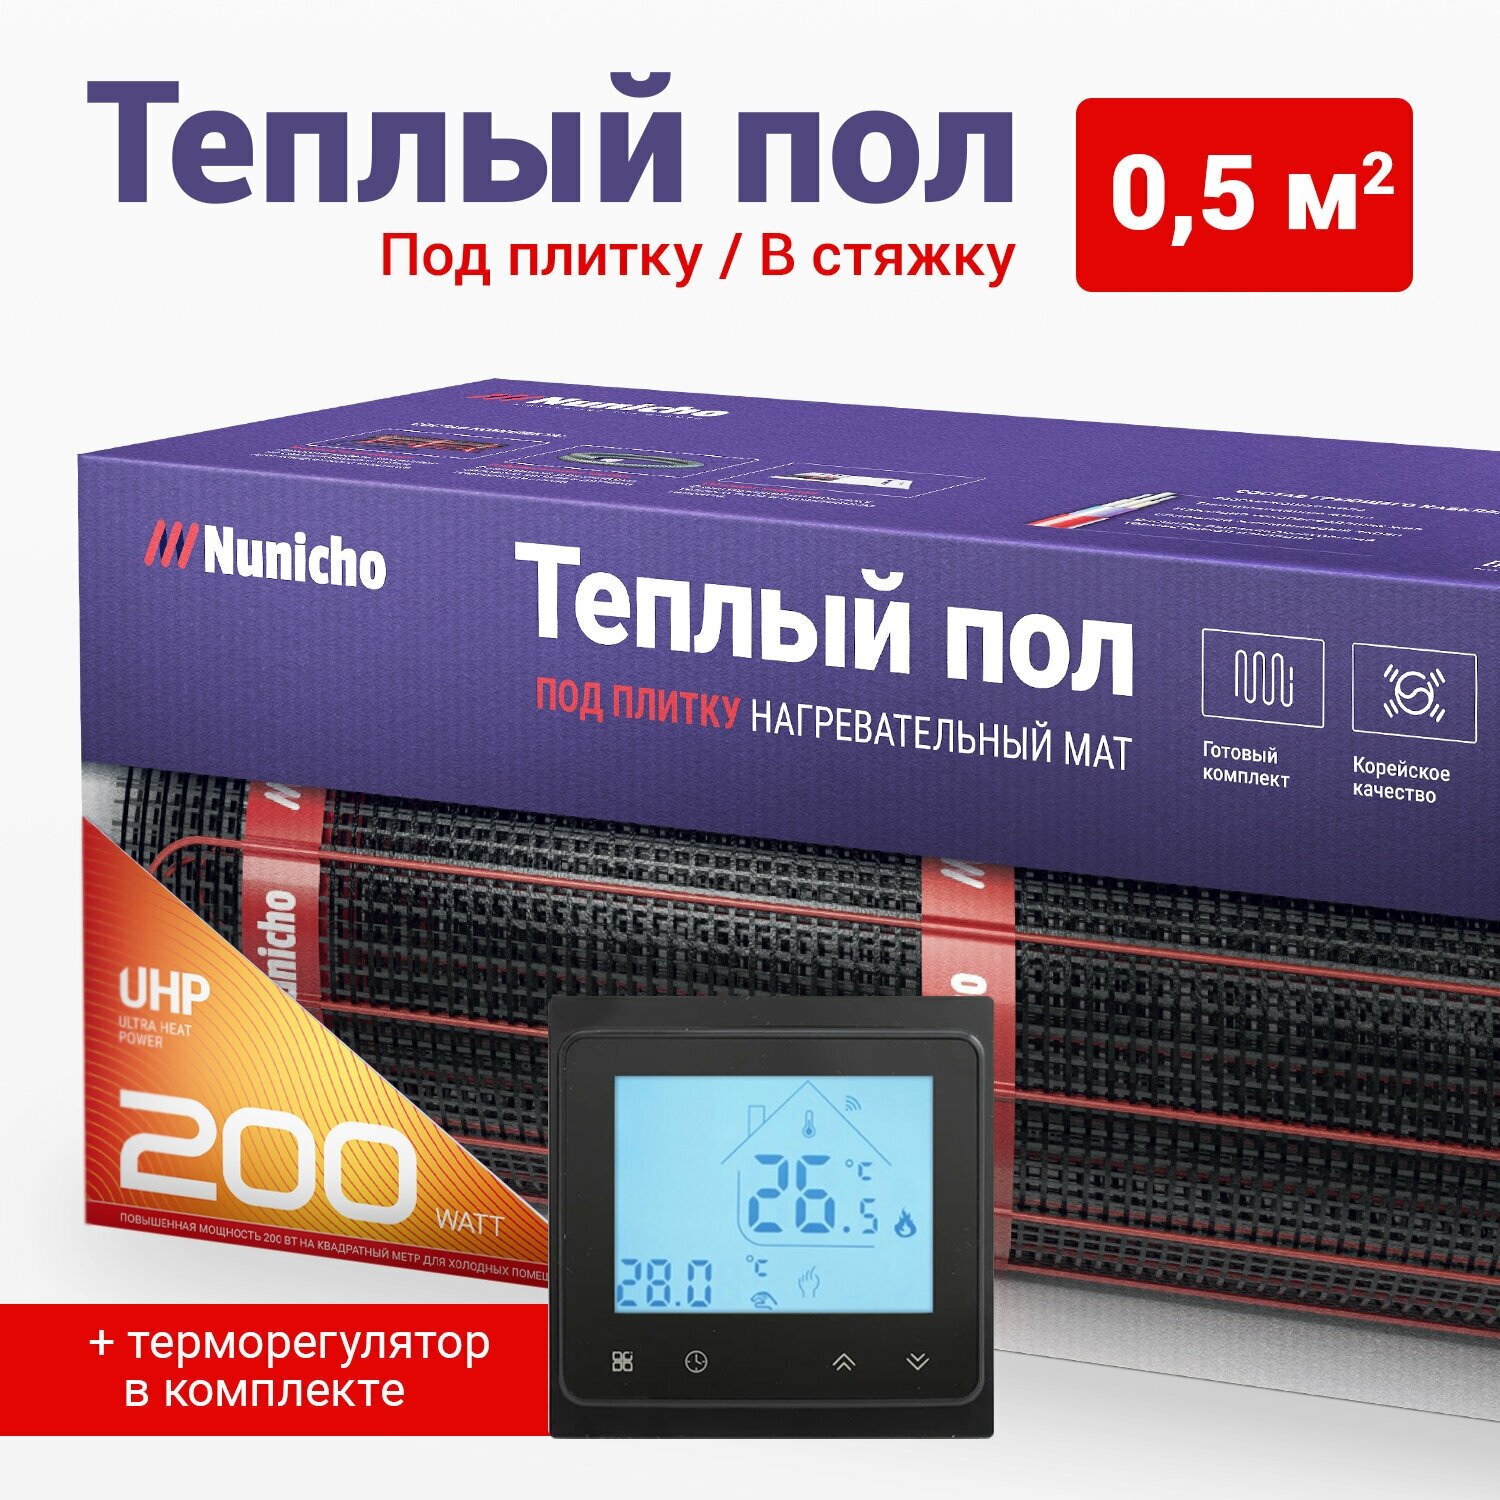 Теплый пол электрический под плитку 0,5 м2 Nunicho 200 Вт/м2 с Wifi терморегулятором черным, нагревательный мат пр-во Южная Корея